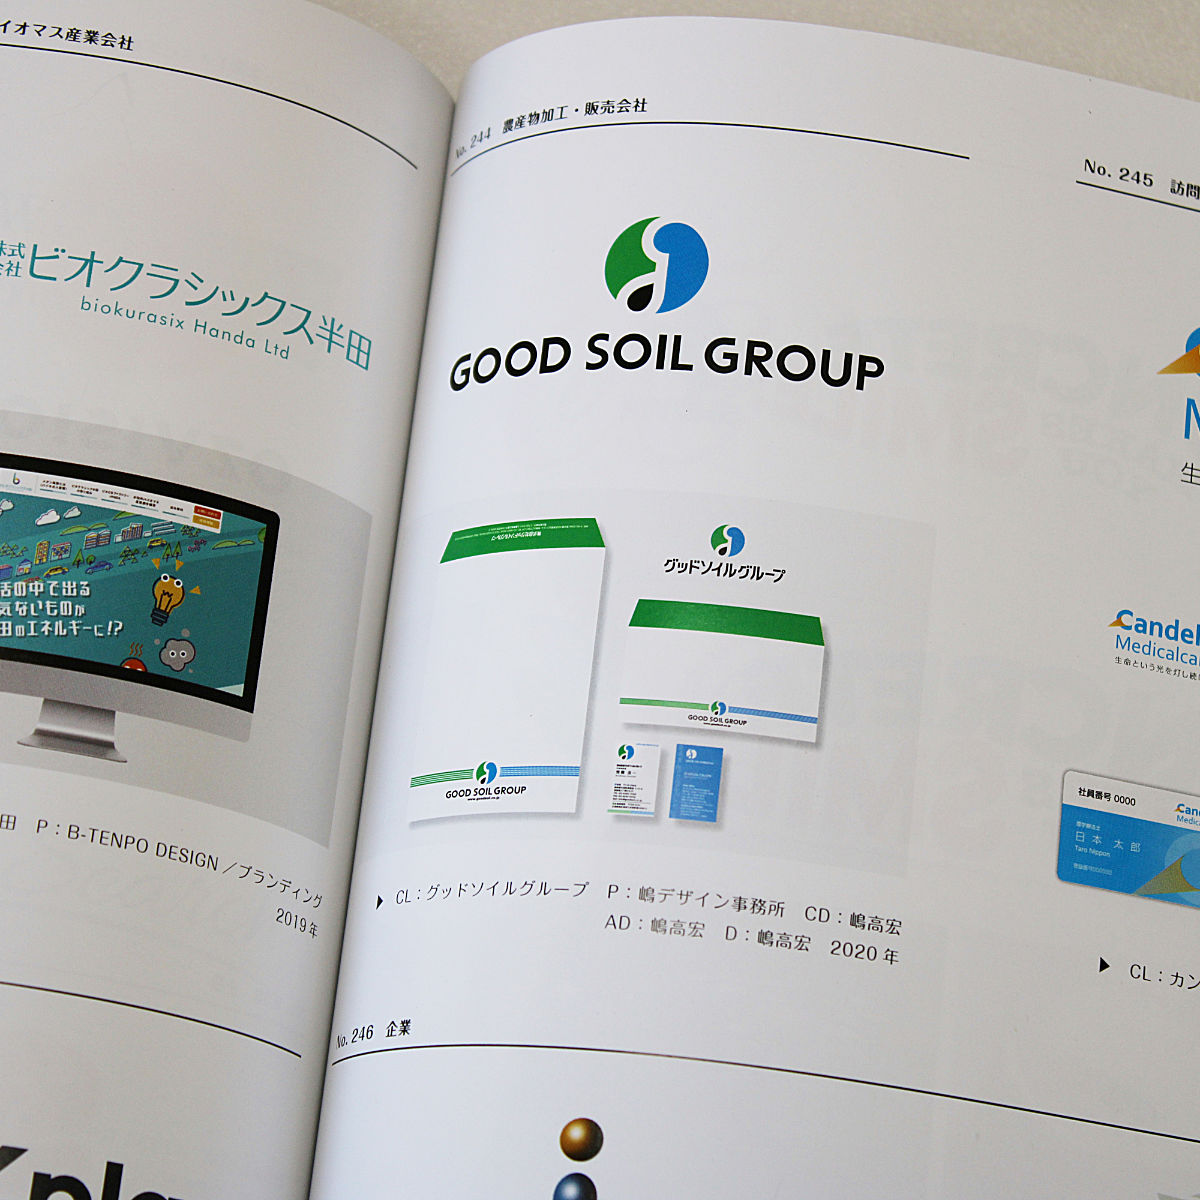 「GOOD SOIL GROUP」ロゴマーク （嶋デザイン事務所）